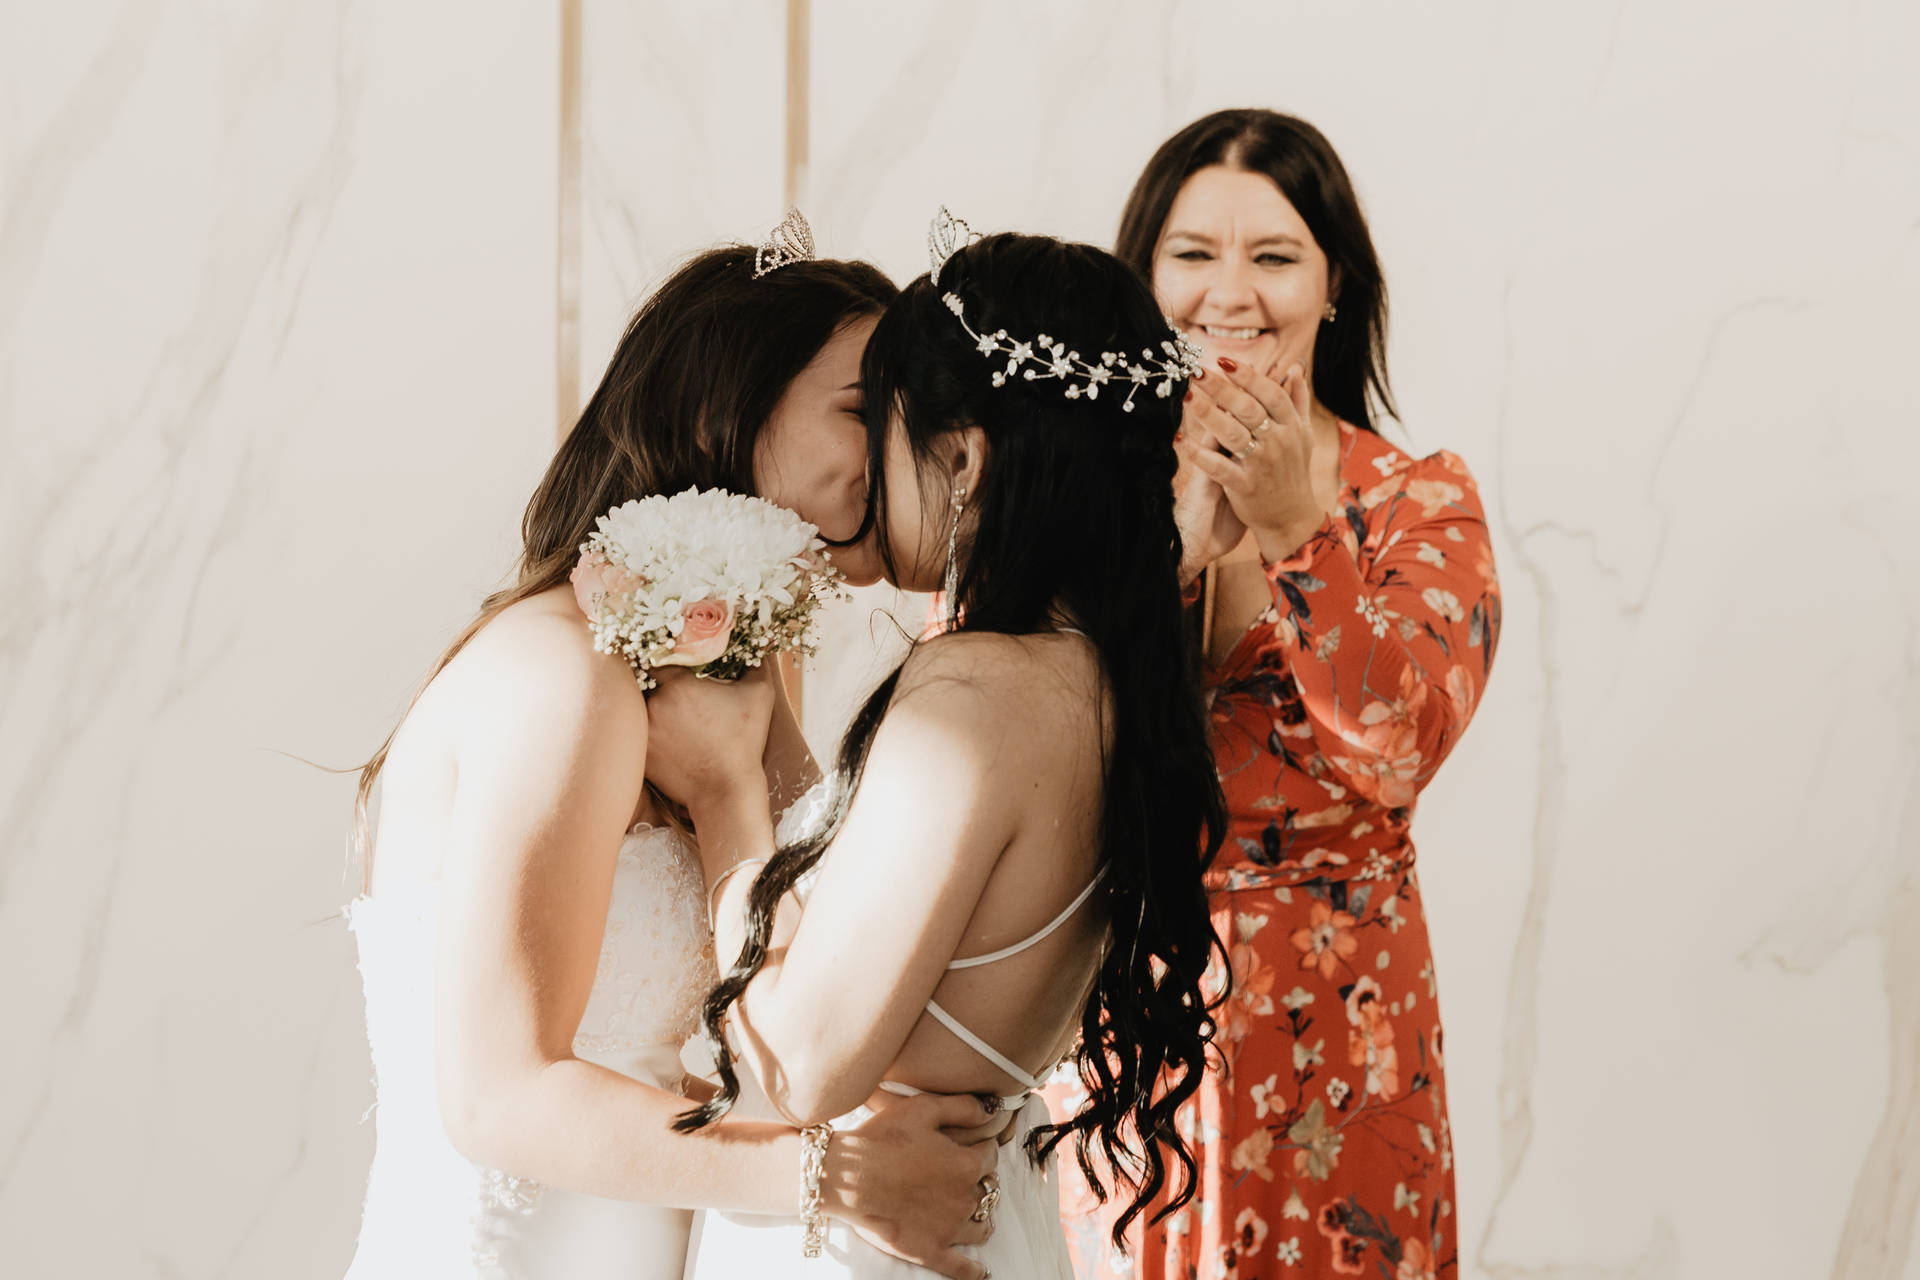 Lesbian Wedding Kiss